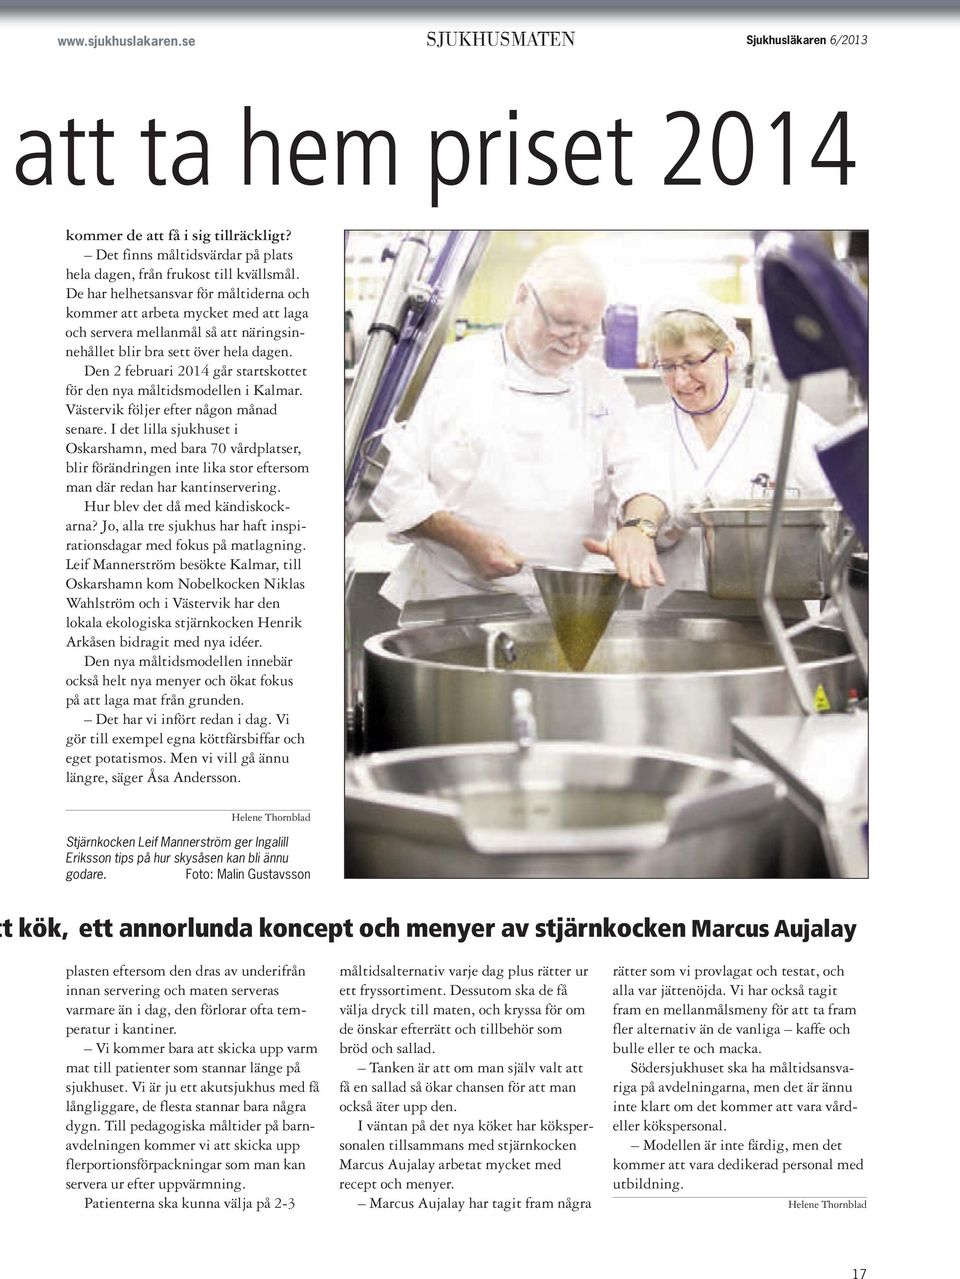 Den 2 februari 2014 går startskottet för den nya måltidsmodellen i Kalmar. Västervik följer efter någon månad senare.